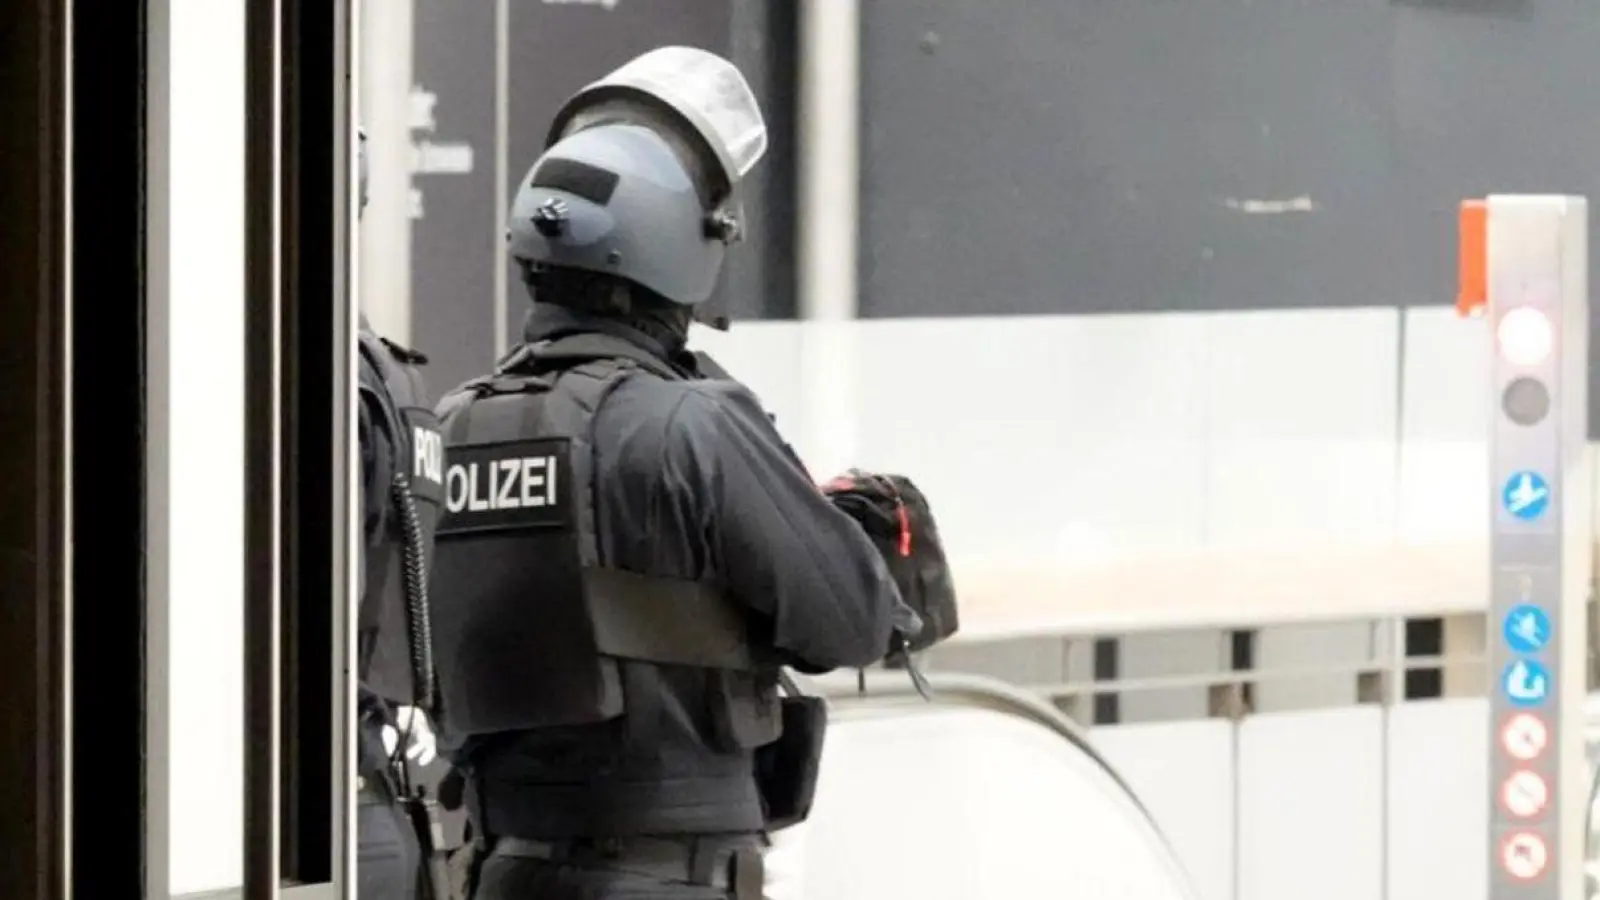 Einsatzkräfte der Polizei stehen im Bielefelder Hauptbahnhof. (Foto: Christian Müller/Wetfalennews/dpa)